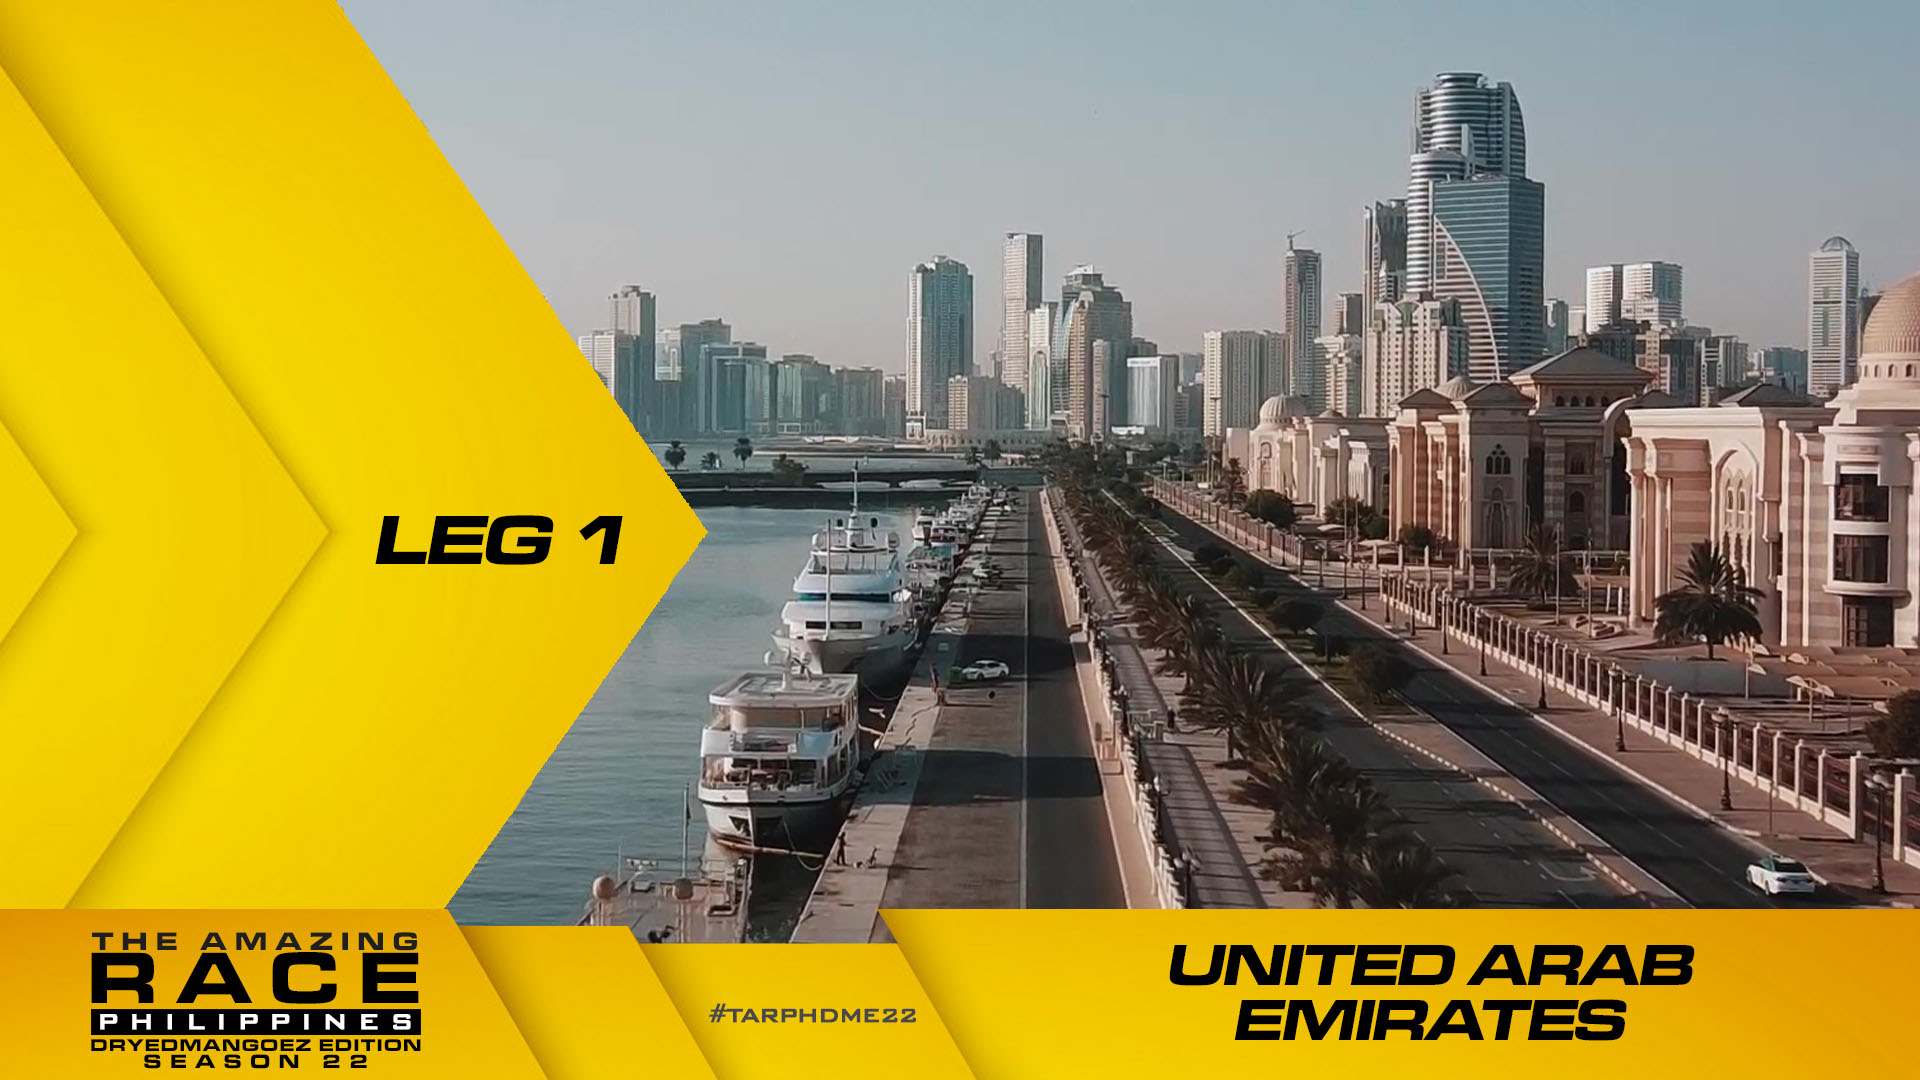 The Amazing Race Philippines: DryedMangoez Edition Season 22, Leg 1 – United Arab Emirates